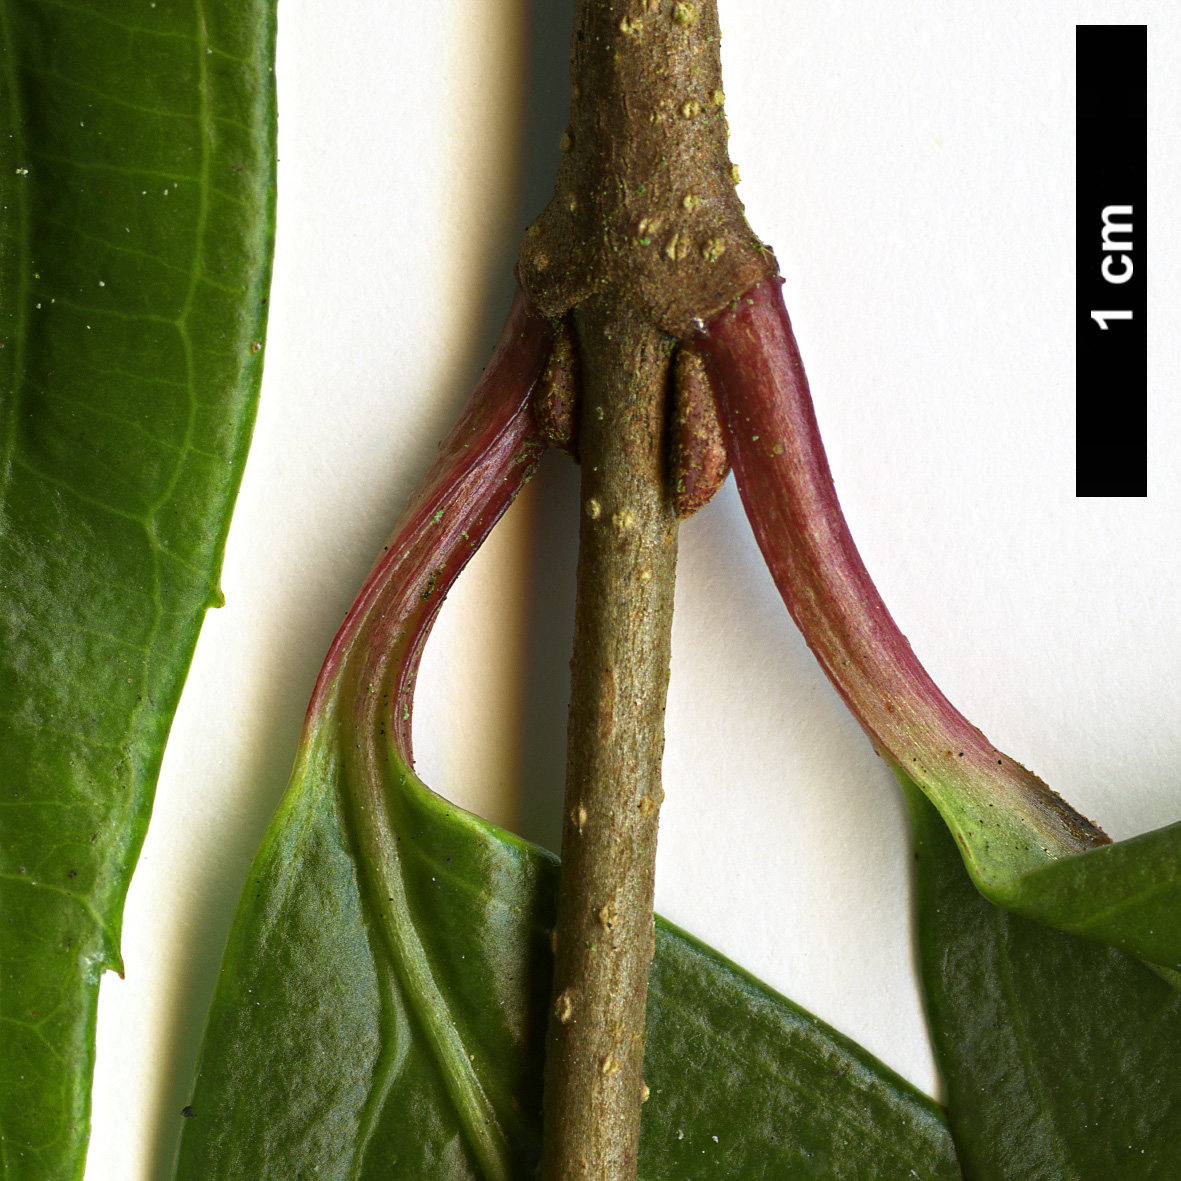 High resolution image: Family: Adoxaceae - Genus: Viburnum - Taxon: oliganthum